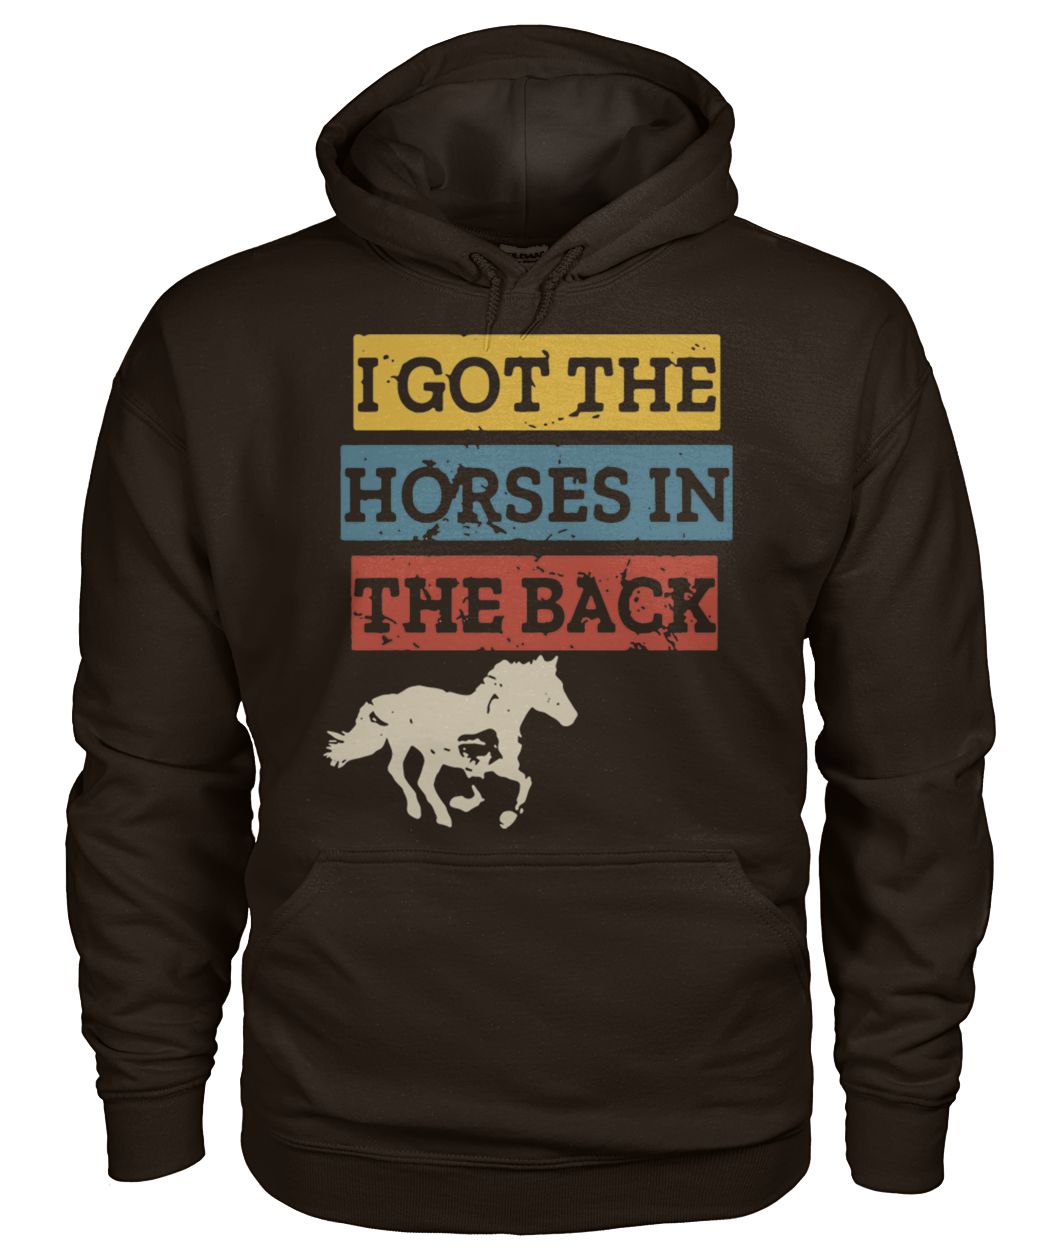 I got the horses in the back gildan hoodie